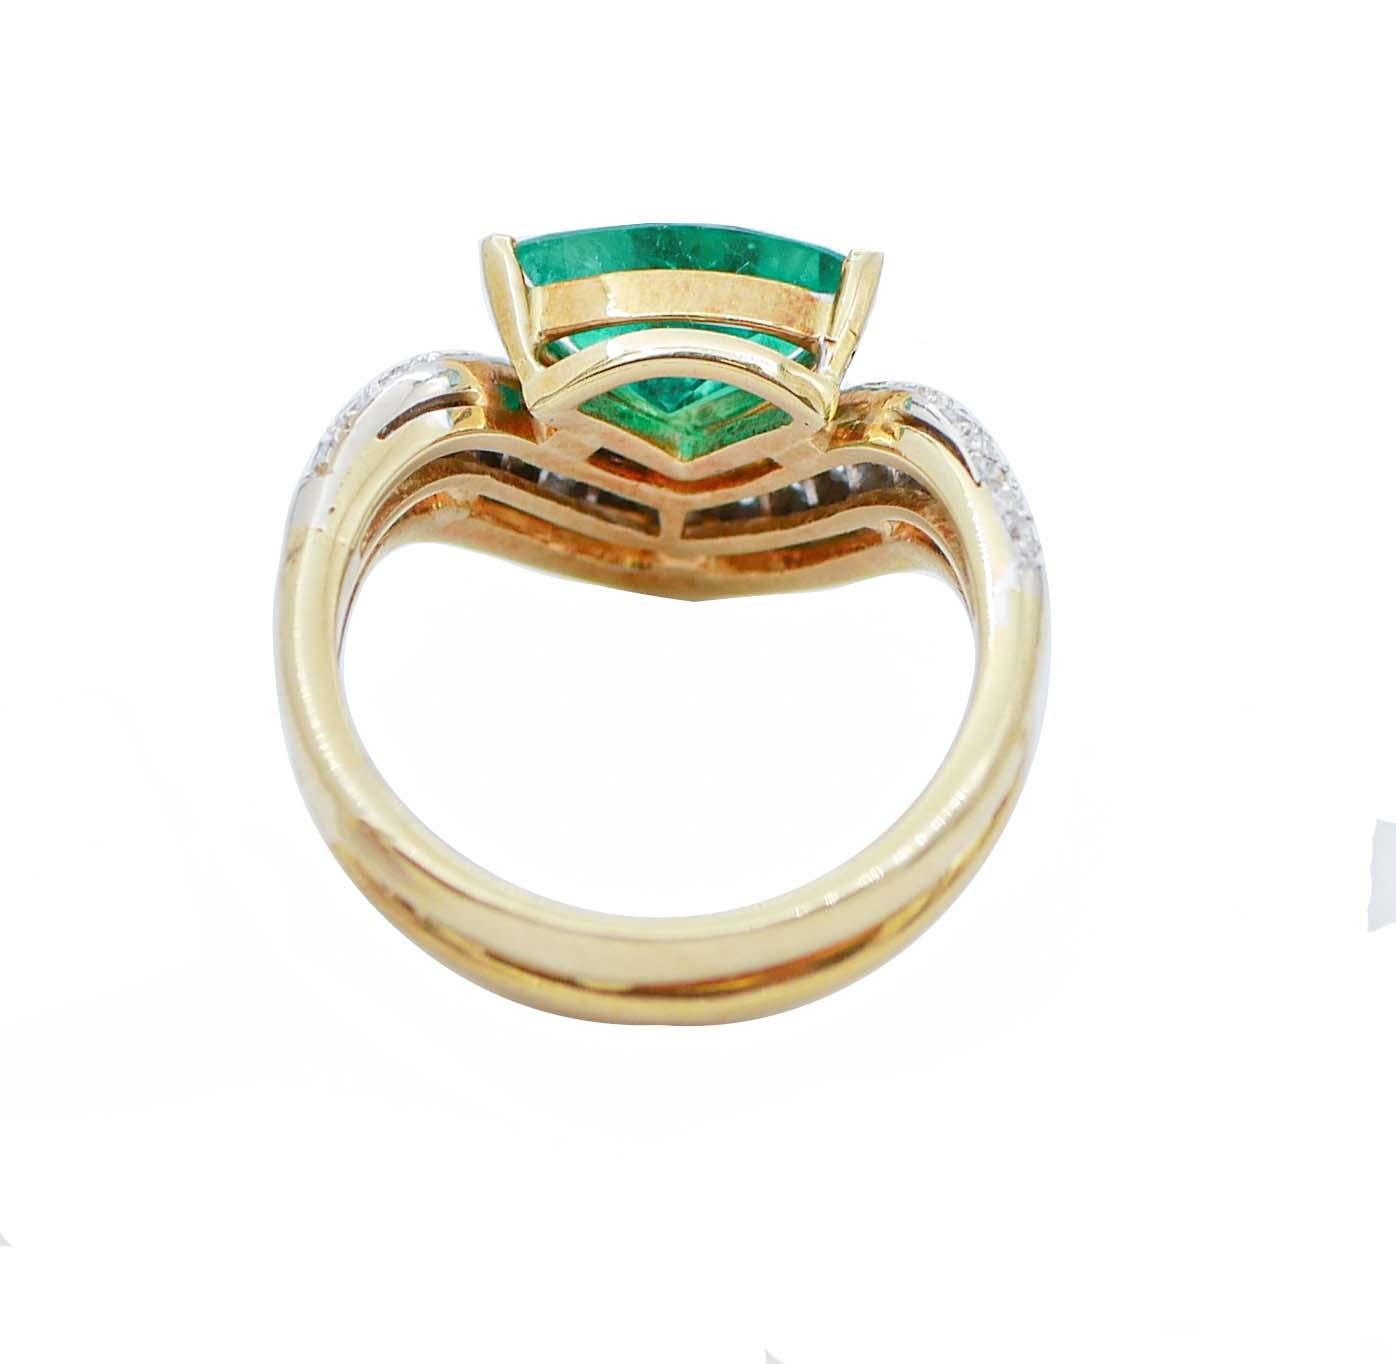 Retro Emerald, Diamonds, 18 Karat Yellow and White Gold Ring